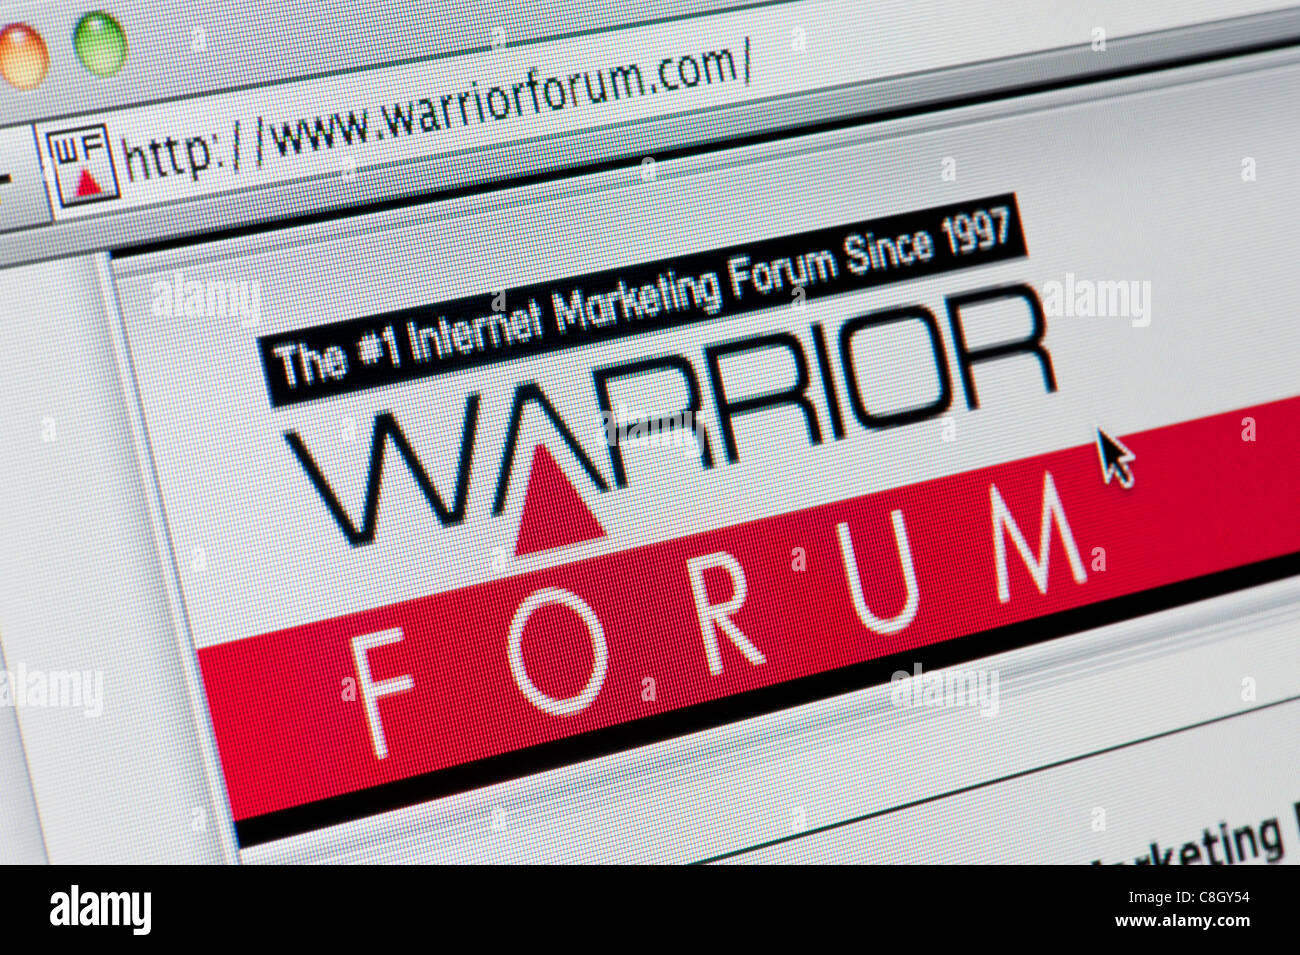 Dream Life Miami - Warrior Forum